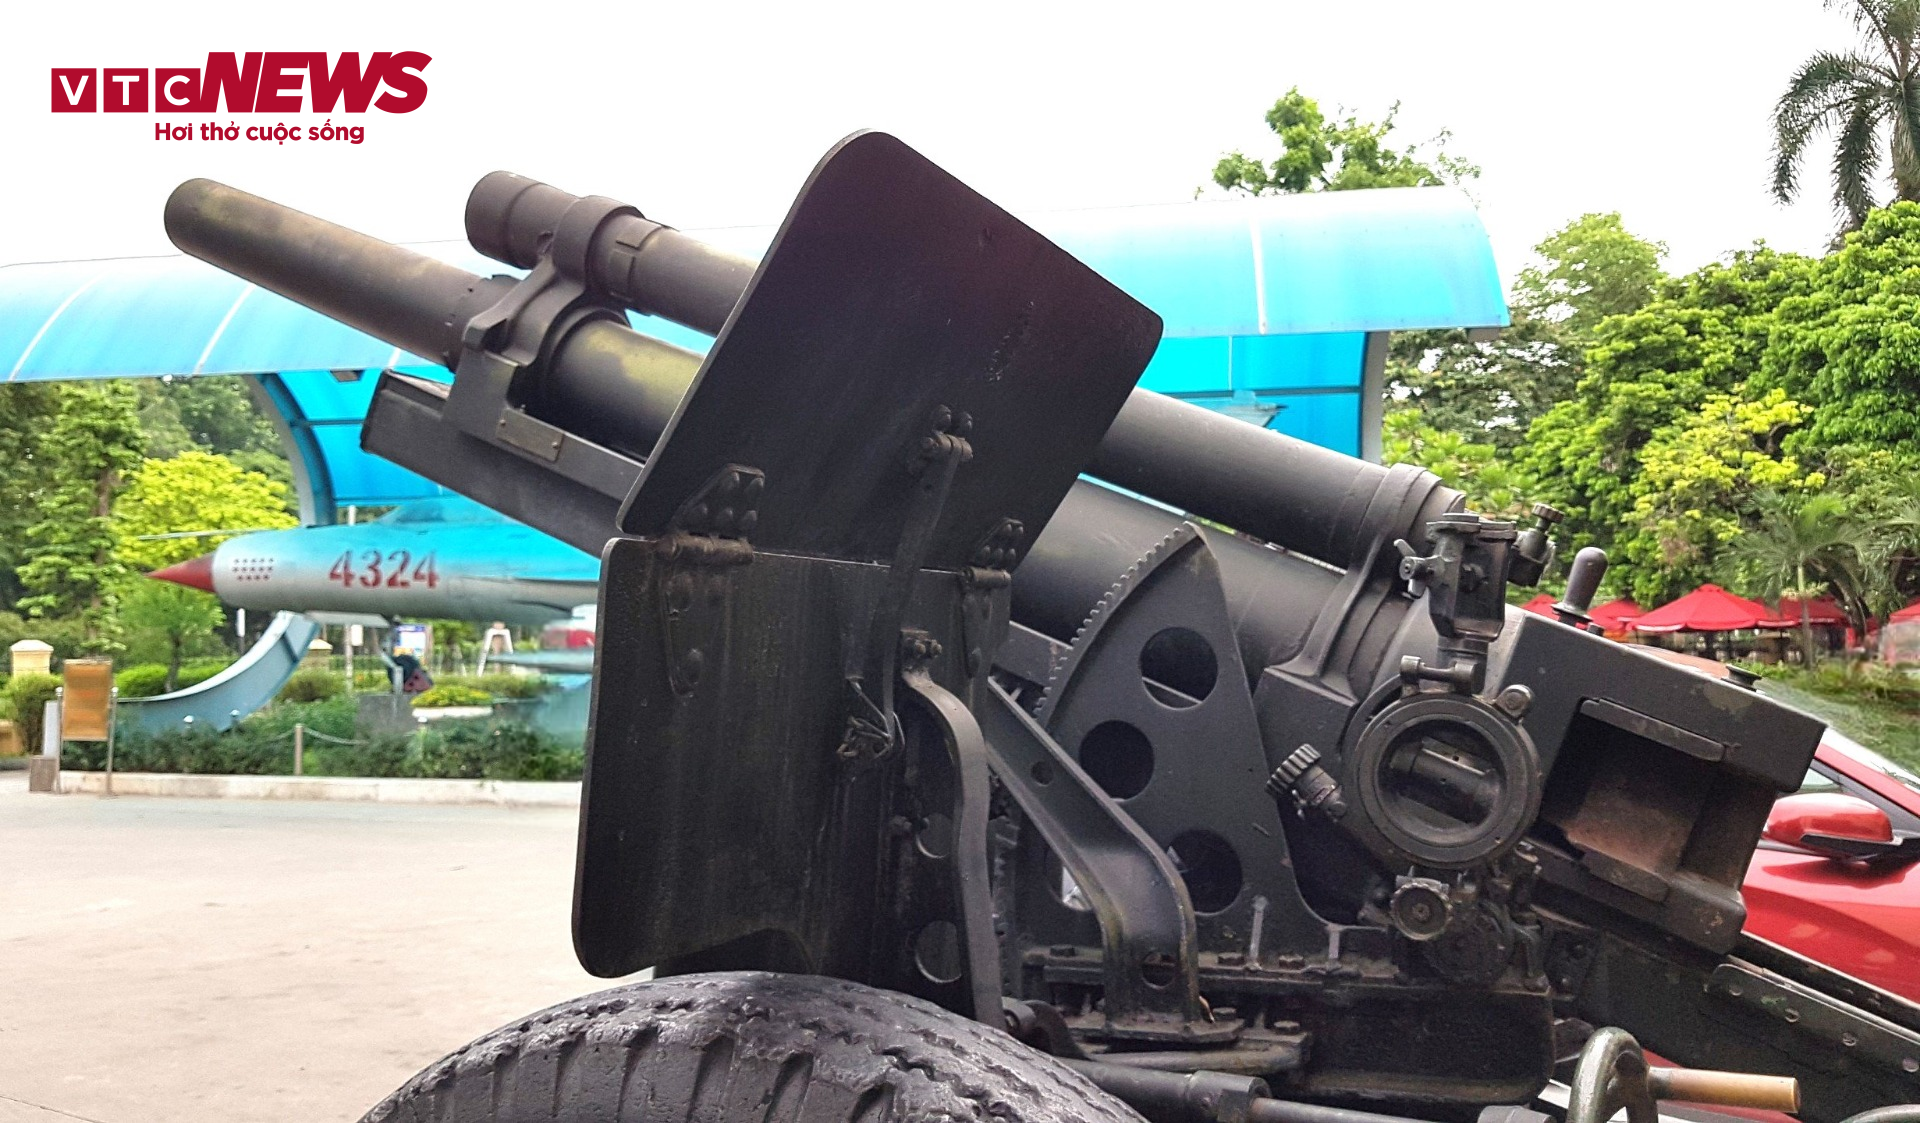 Những khẩu pháo giúp chiến sĩ Điện Biên làm nên chiến thắng 'chấn động địa cầu' - 2